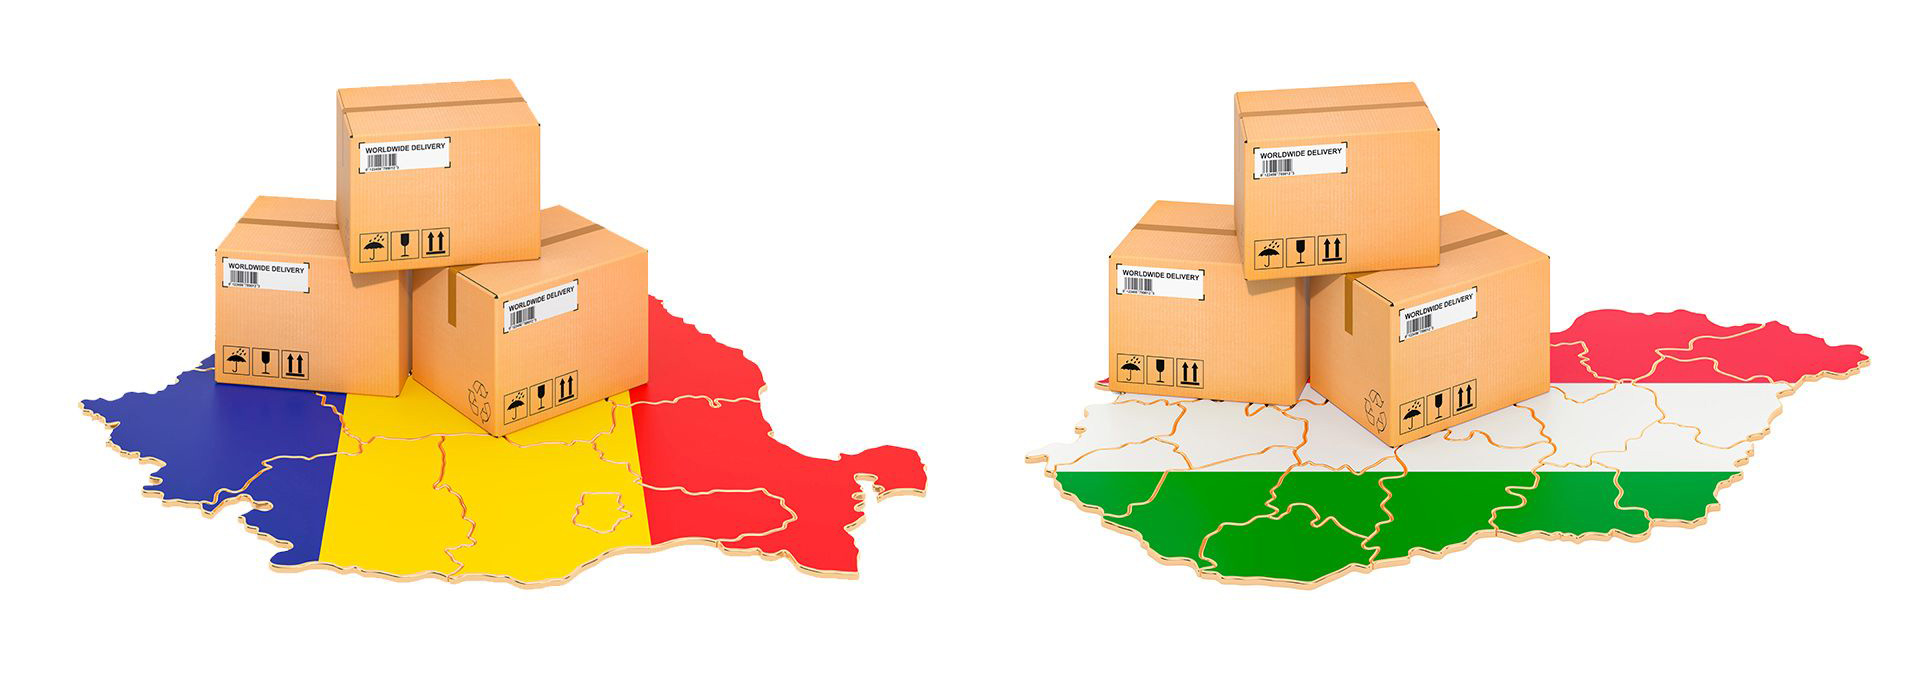 Olza Logistic z najlepszą ofertą wysyłki paczek do Rumunii i na Węgry!